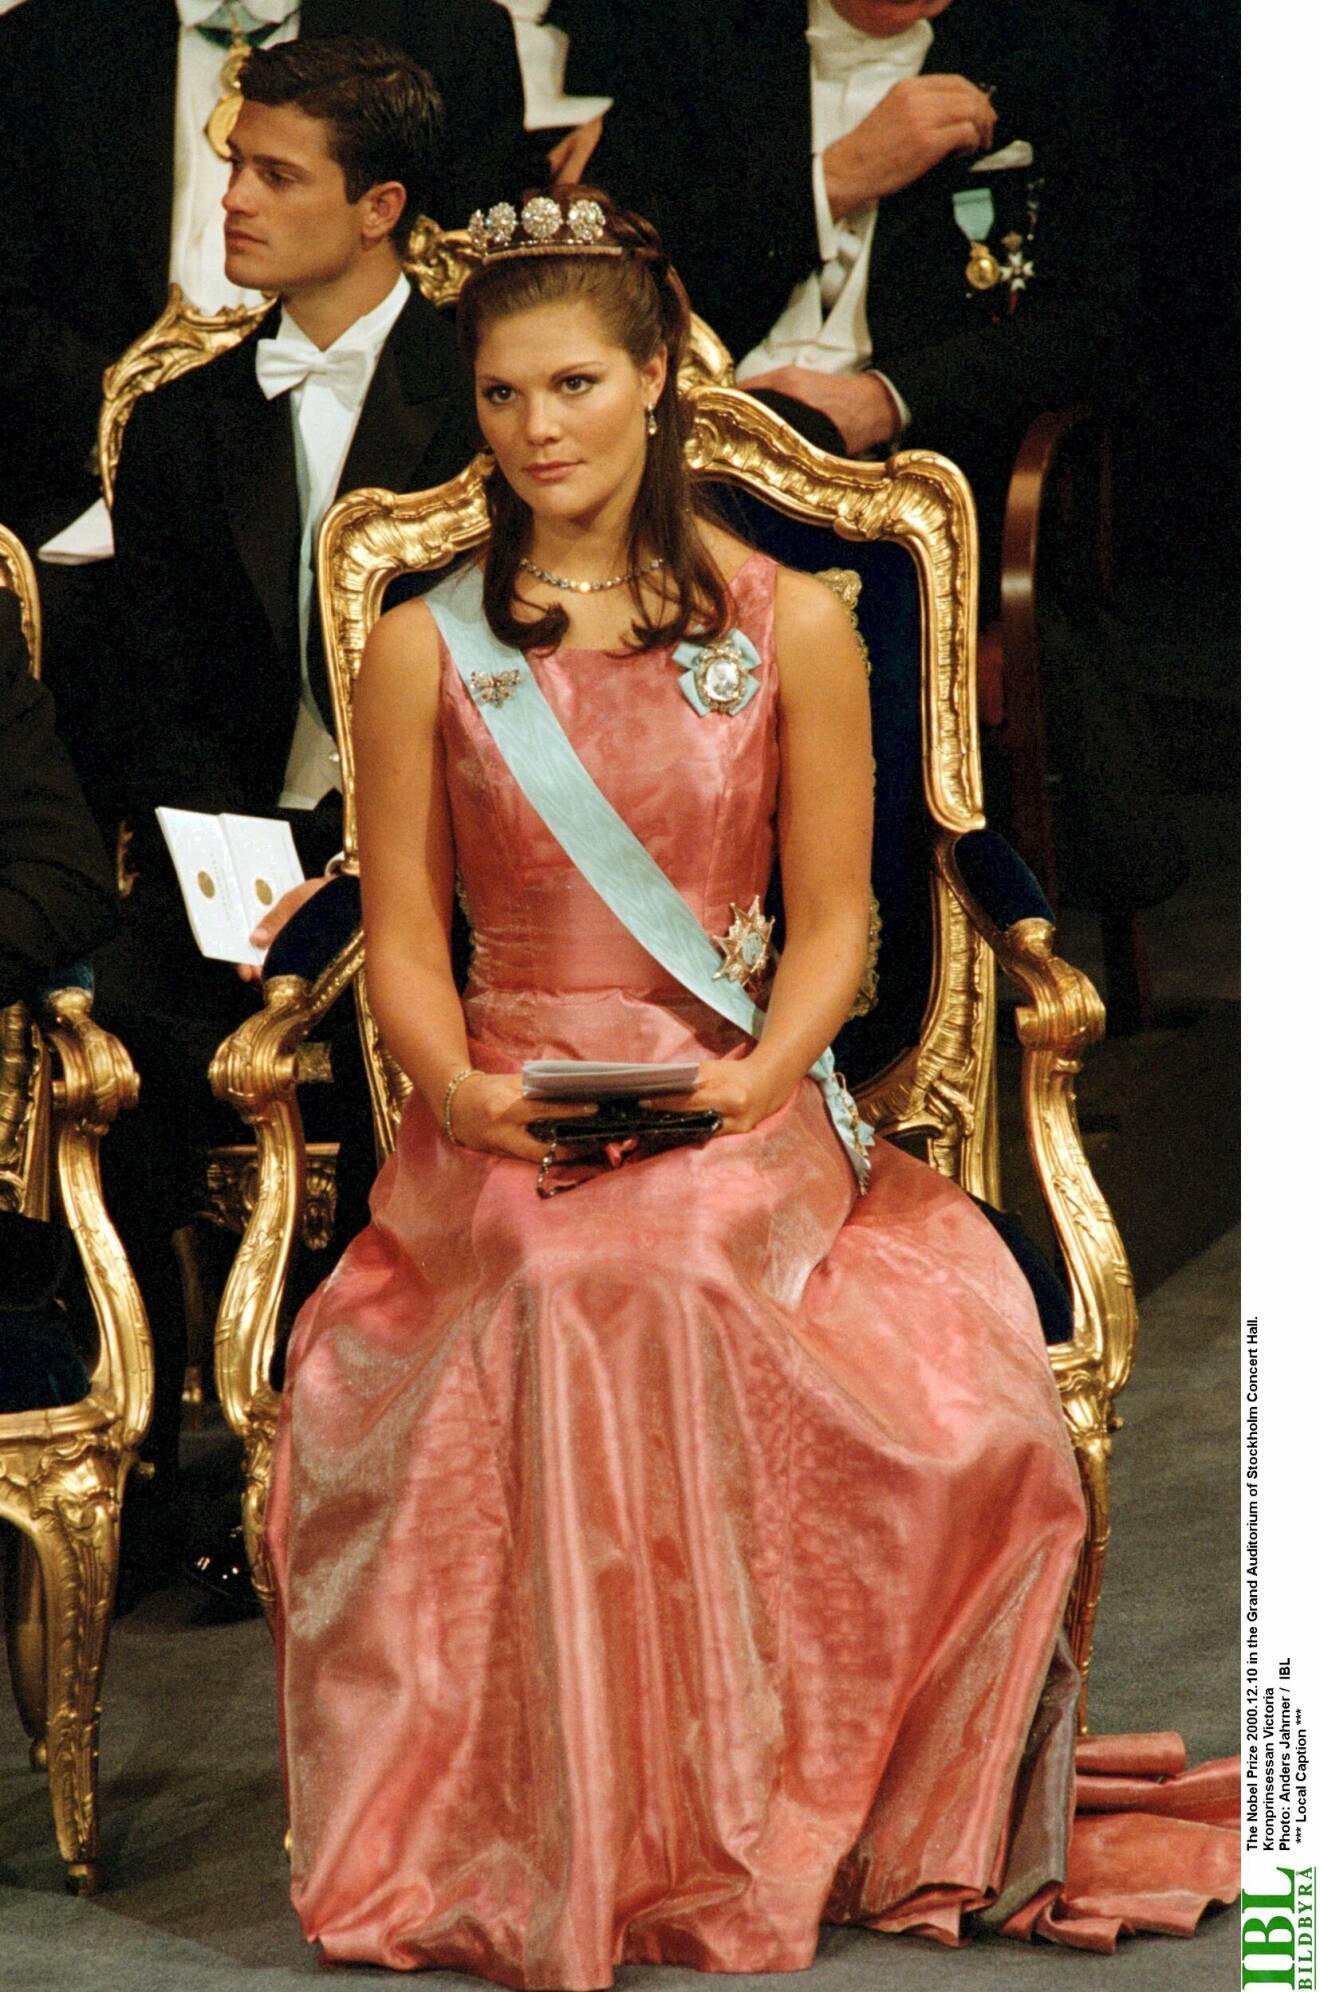 Kronprinsessan Victoria på Nobel 2000 i en rosa klänning